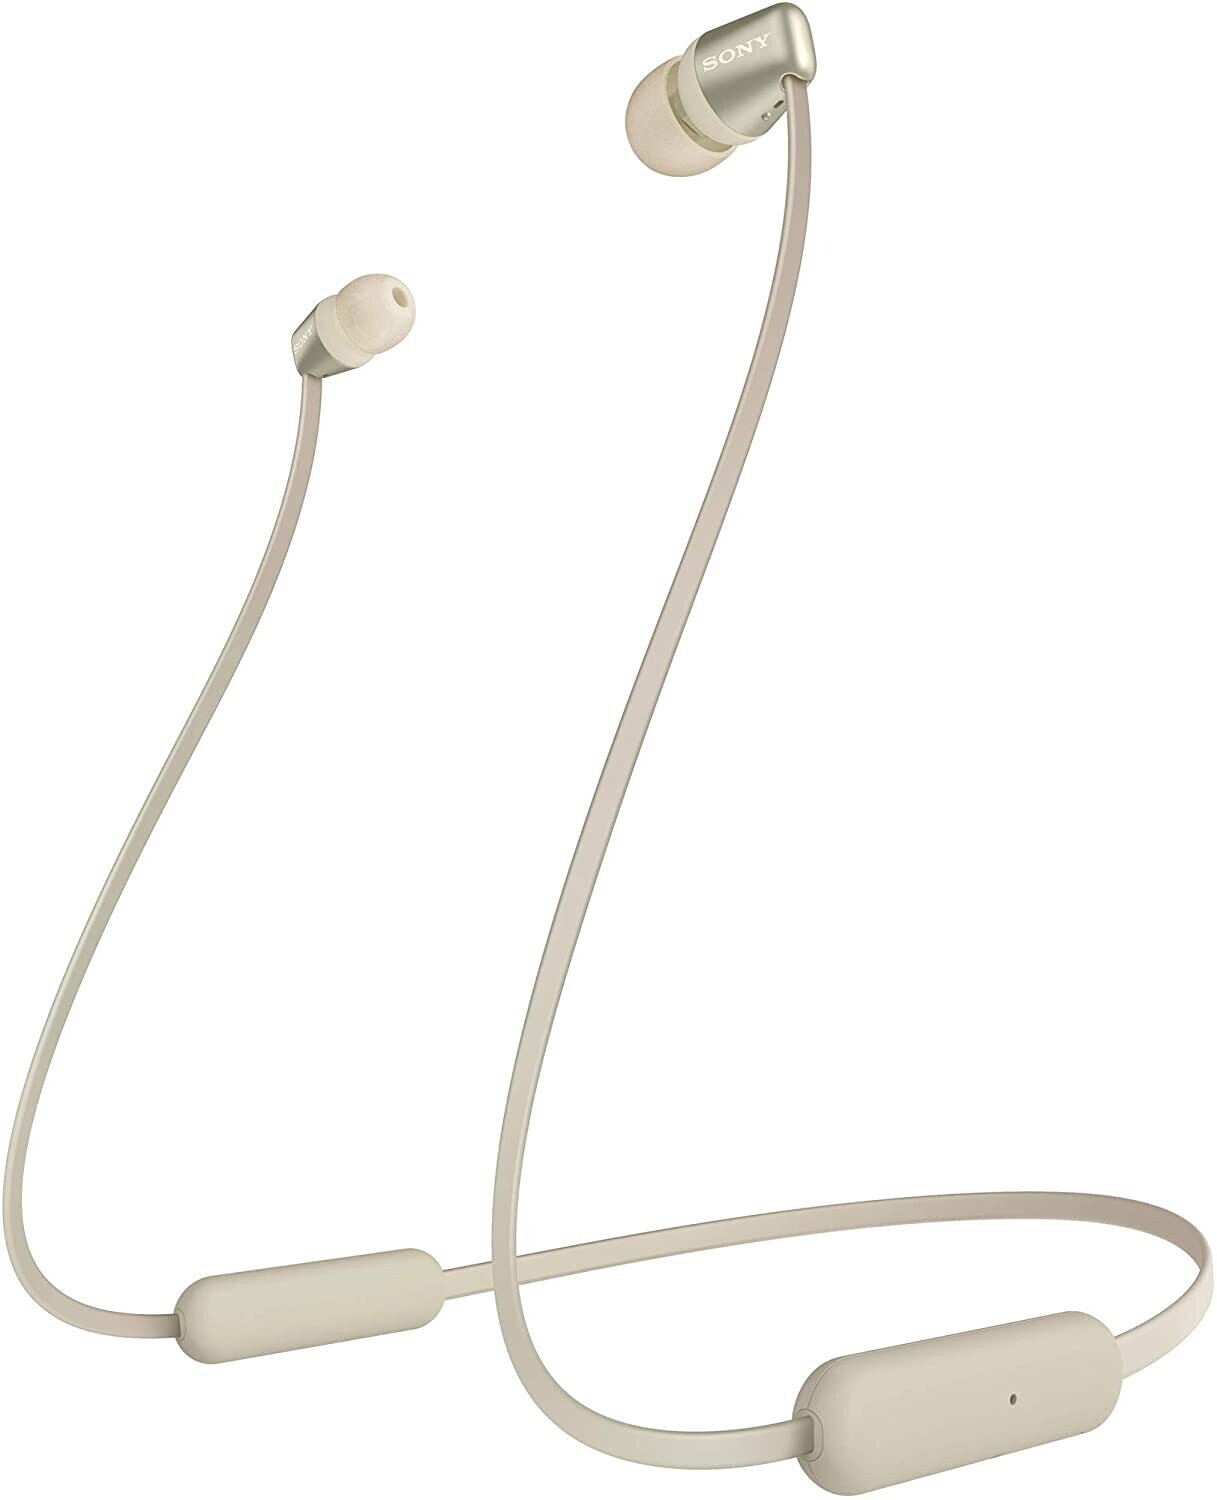 Sony WI-C310 Wireless in-Ear Headphones, Gold